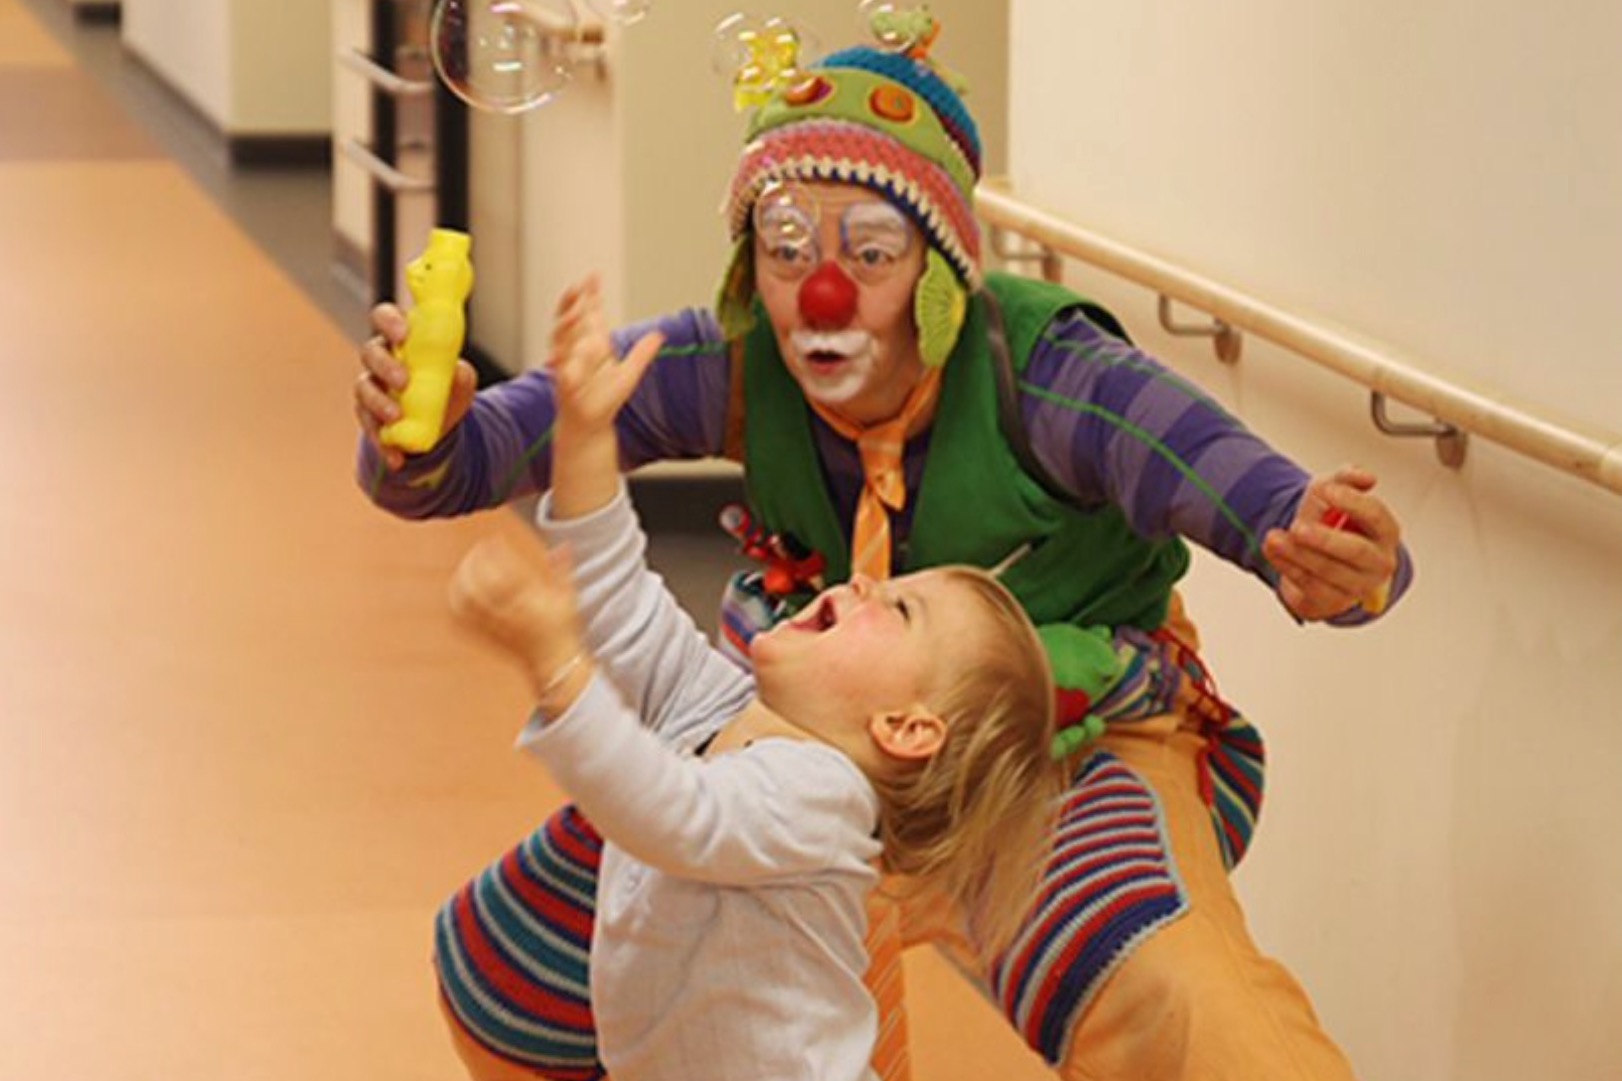 Klinikclown Upps spielt mit einem kleinen Kind auf dem Flur eines Krankenhauses